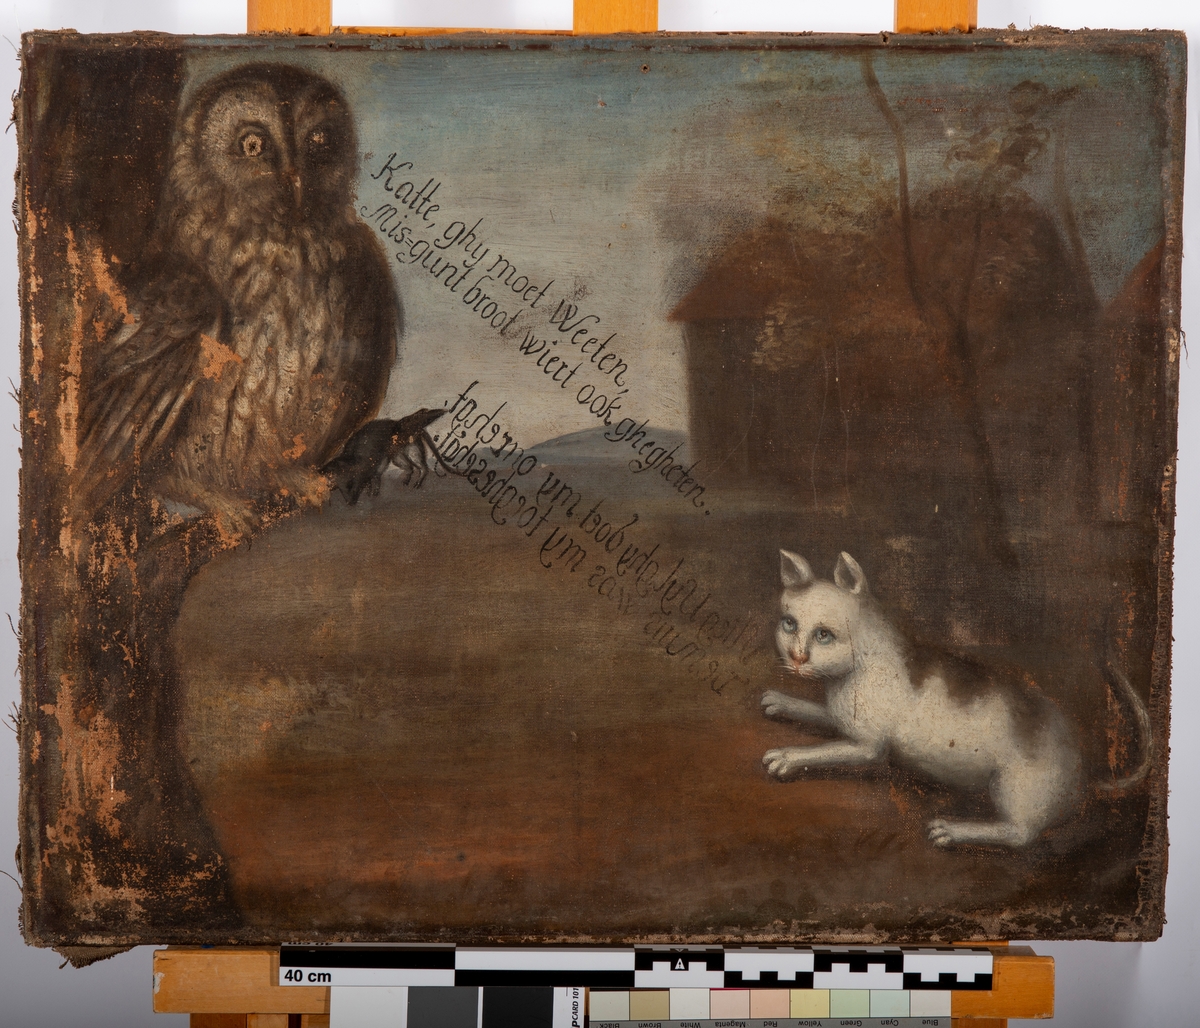 Maleri en ugle i et tre på venstre side, med innskripsjon diagonalt i motivet og en katt nede til høyre. Hus og horisont i bakgrunnen.